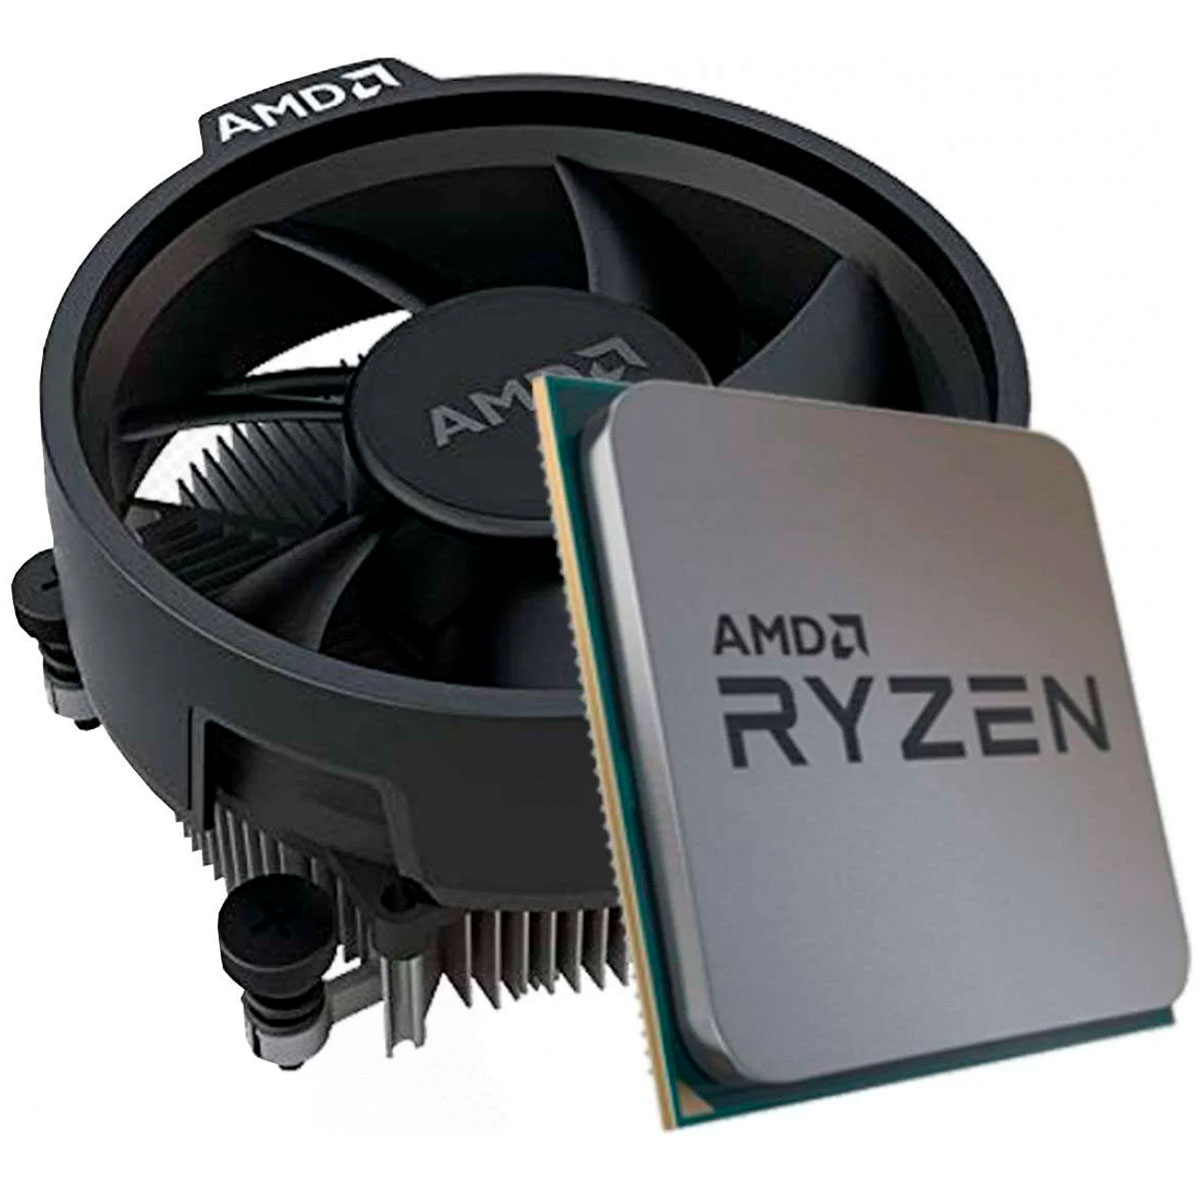 AMD Ryzen 5 3500 Hexa Core - 6 Threads - 3.6GHz (4.1GHz Turbo) - AM4 - TDP 65W - 100-100000050MPK - OEM - com Cooler